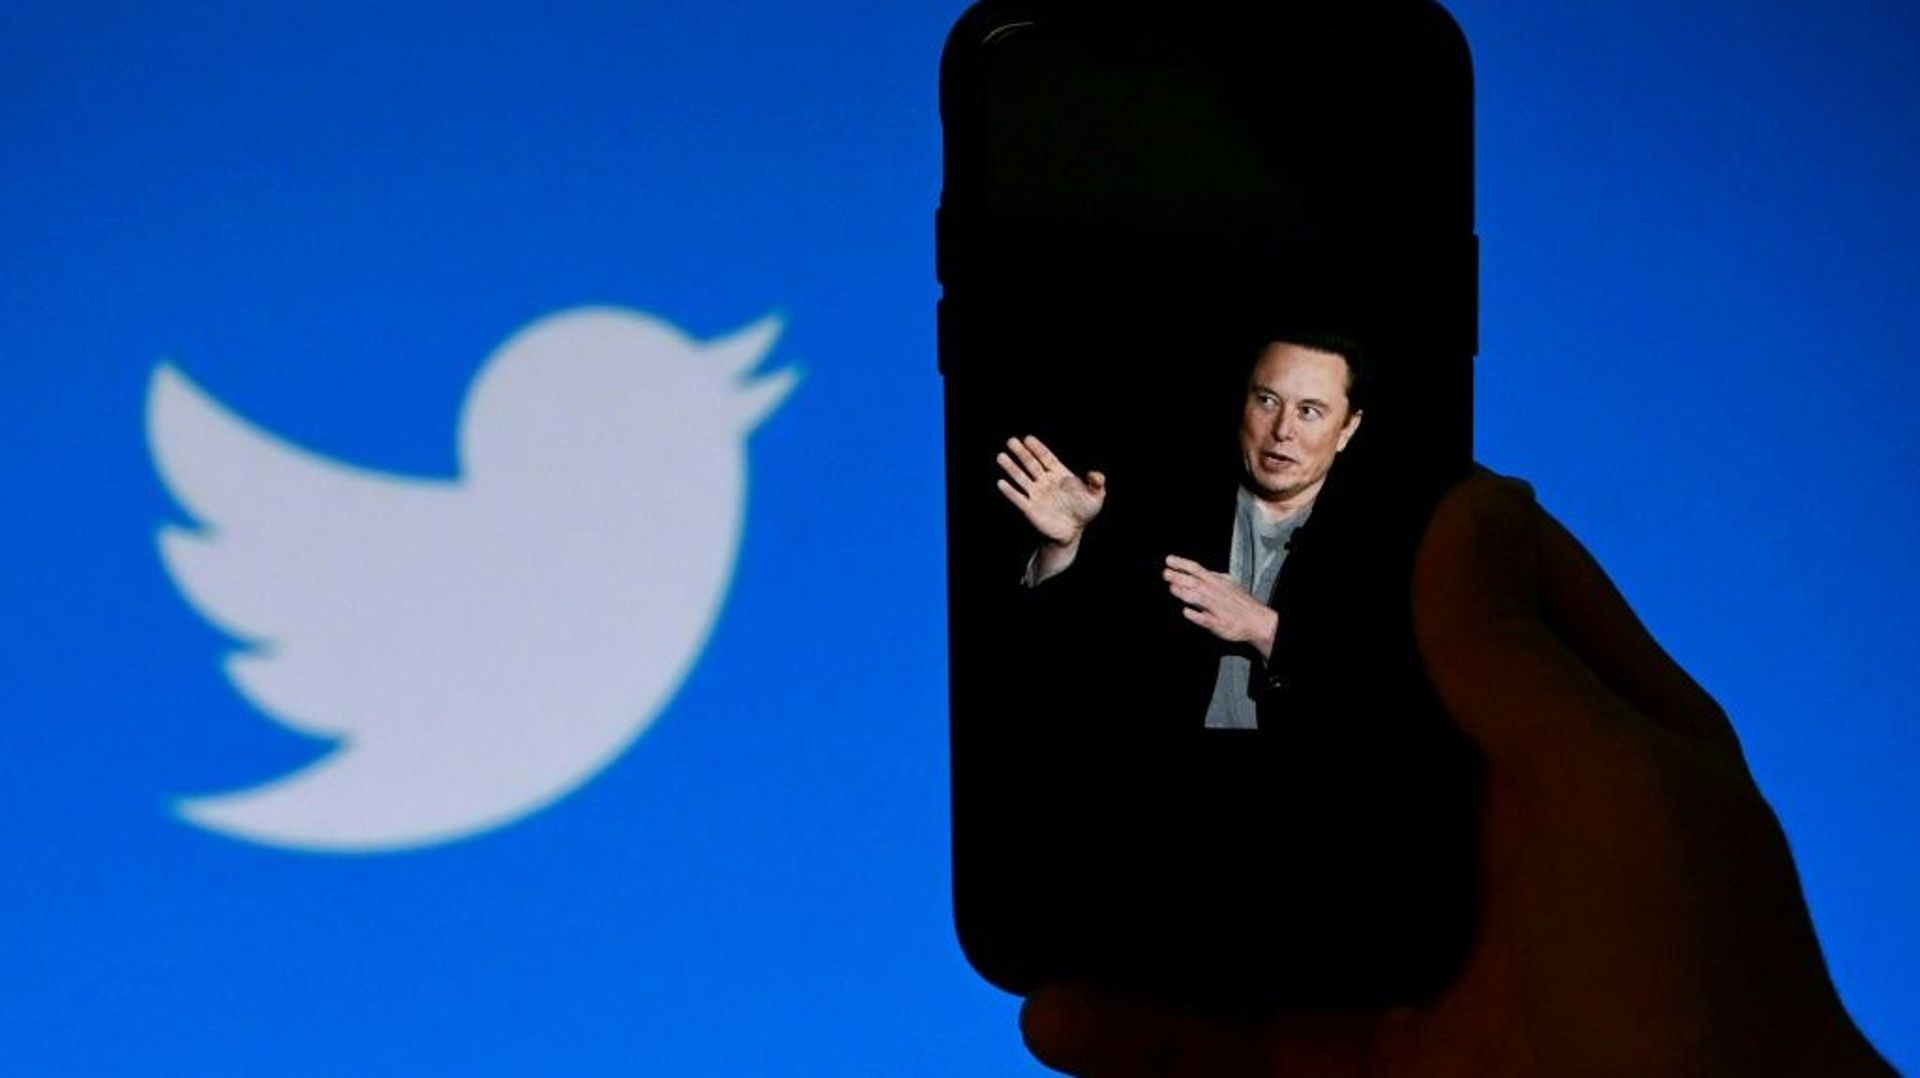 Ecran de téléphone affichant une photo d'Elon Musk avec le logo Twitter en arrière-plan, le 4 octobre 2022, à Washington